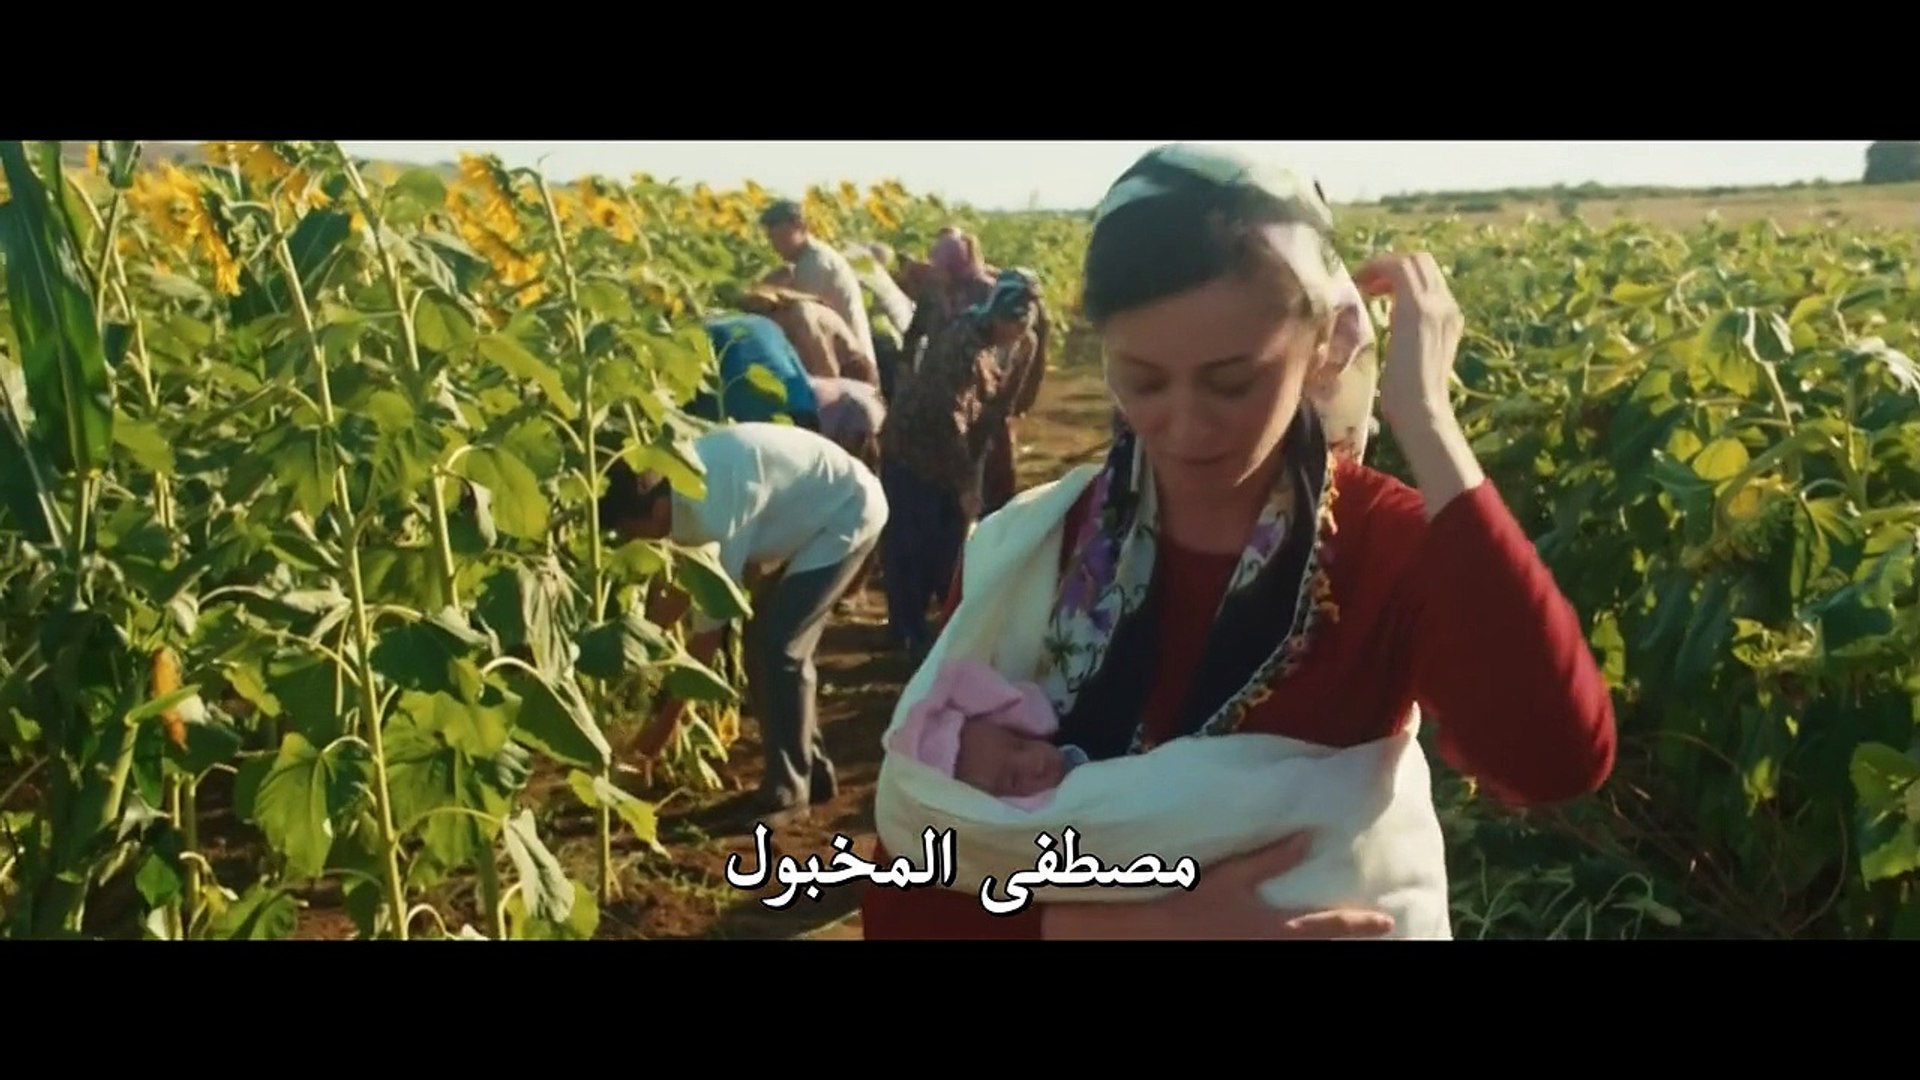 فيلم اللطيف والخطير مترجم للعربية بجودة عالية (القسم 1) - Vidéo Dailymotion